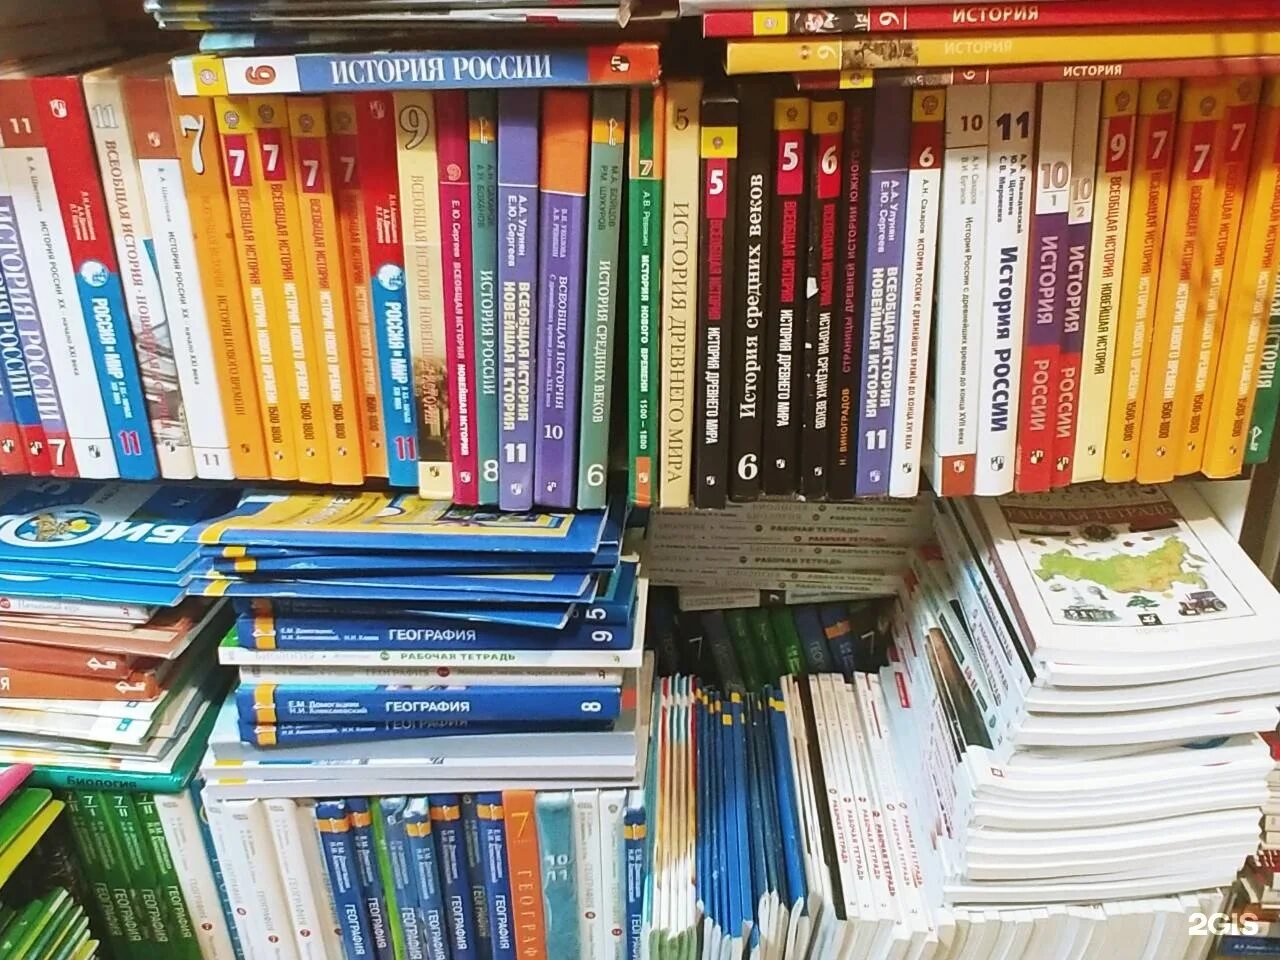 Учебник магазин. Учебники школьные магазин. Магазин учебников для школы. Самый дешевый интернет магазин учебников для школы.